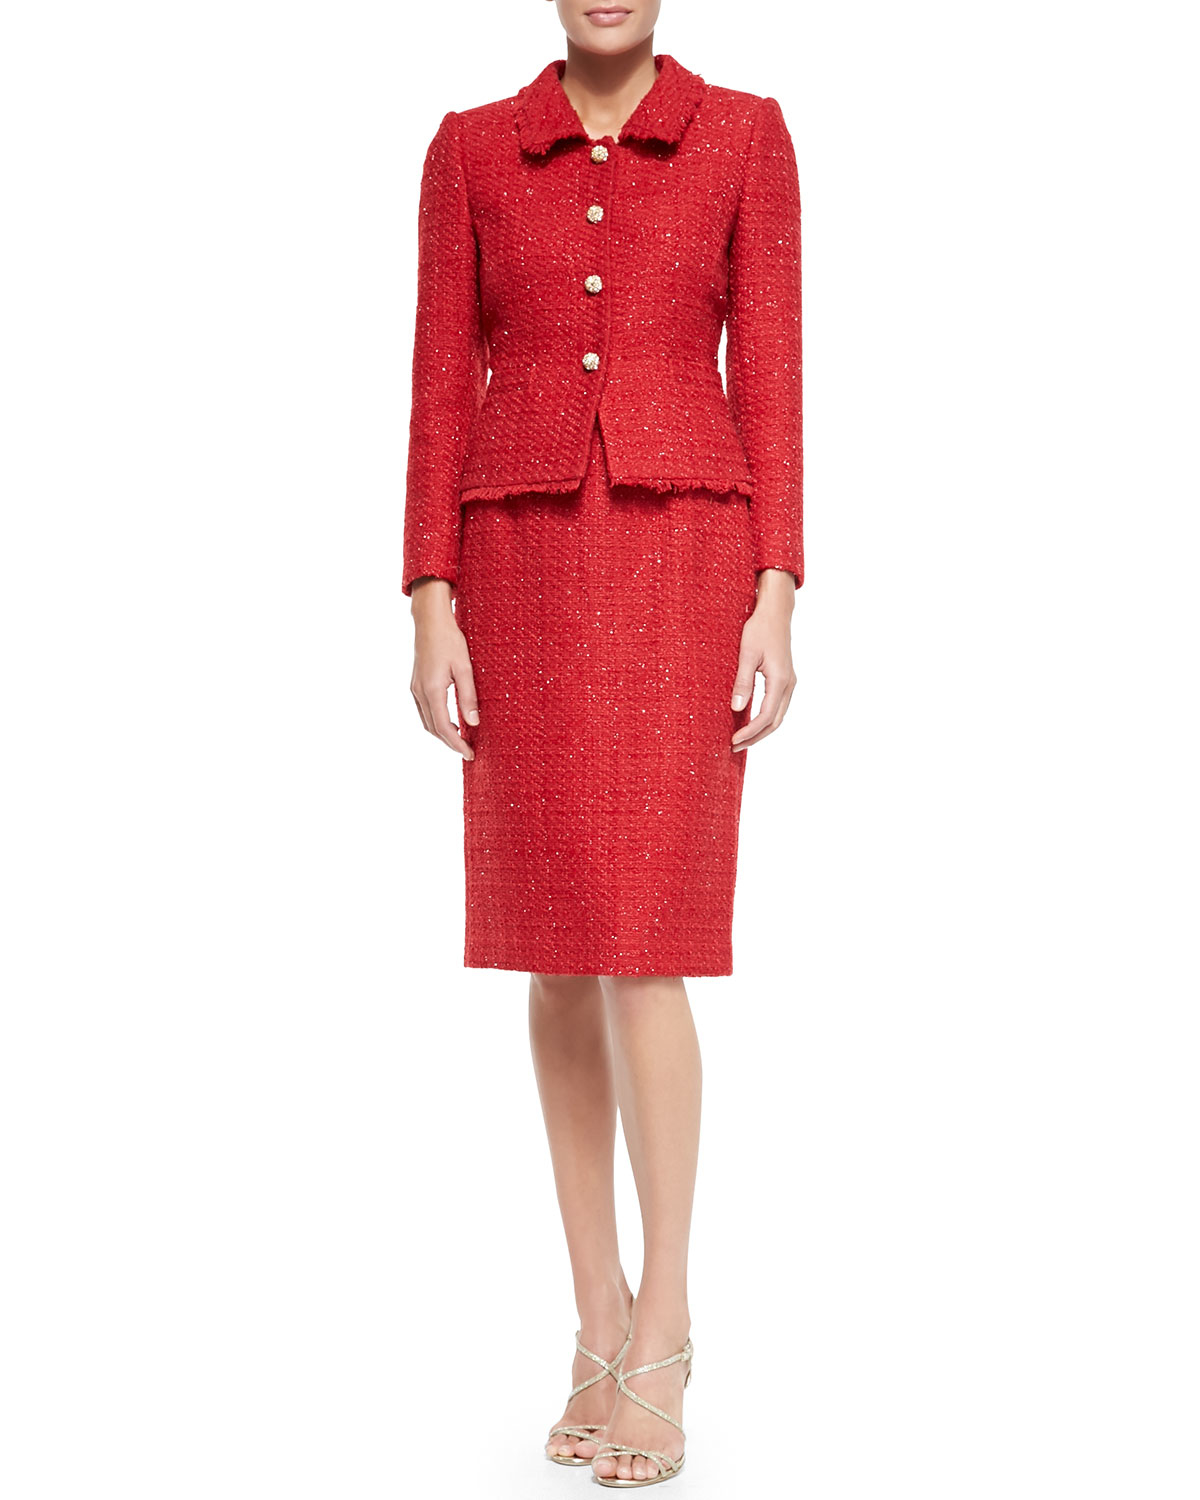 Lyst - Tahari Metallic Tweed Skirt Suit in Red